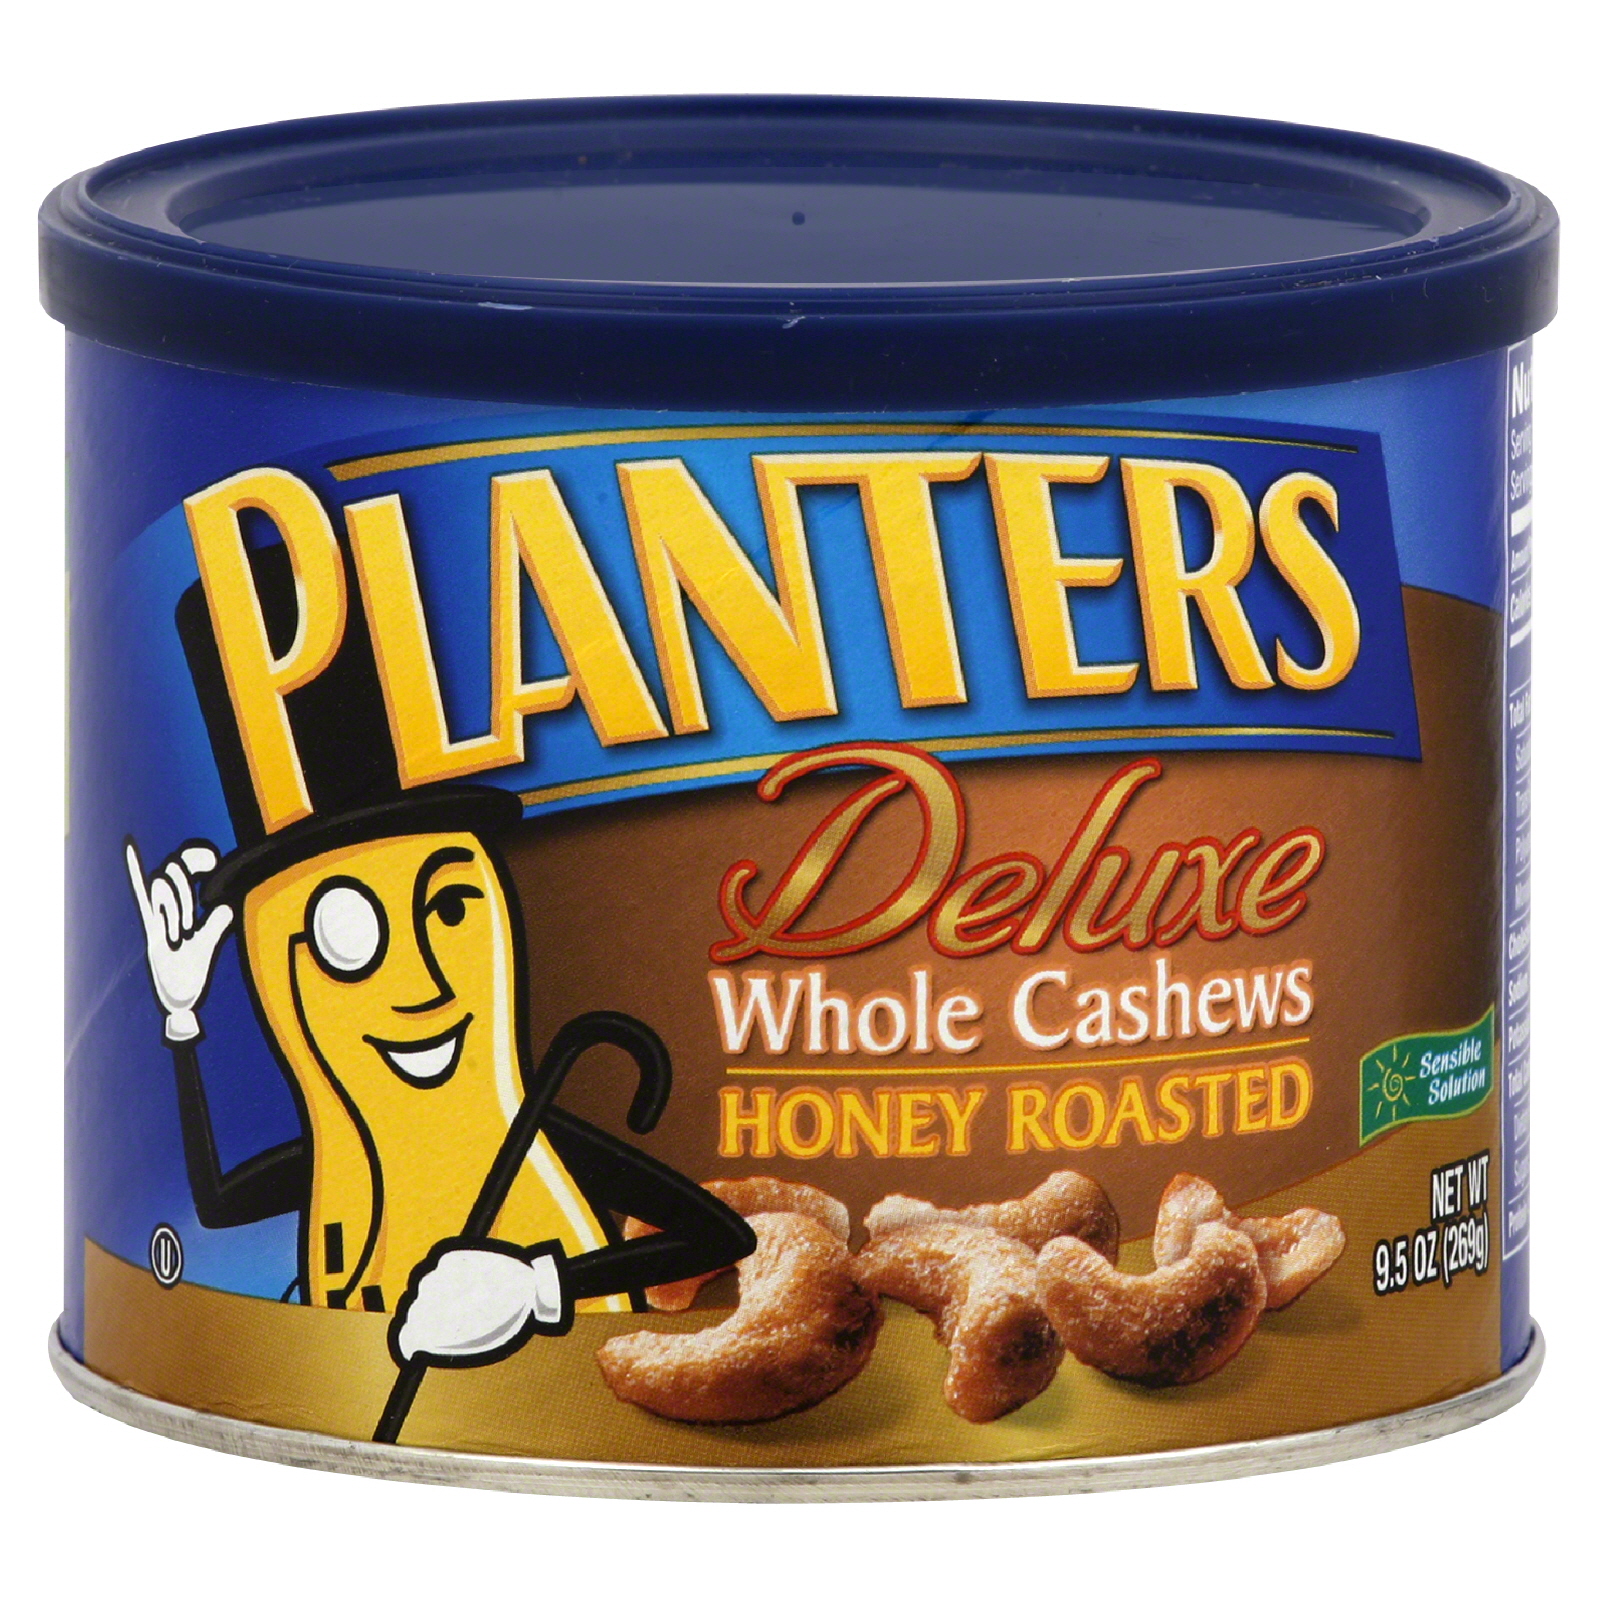 Planters Deluxe Cashews, Whole, Honey Roasted, 9.5 oz (269 g)